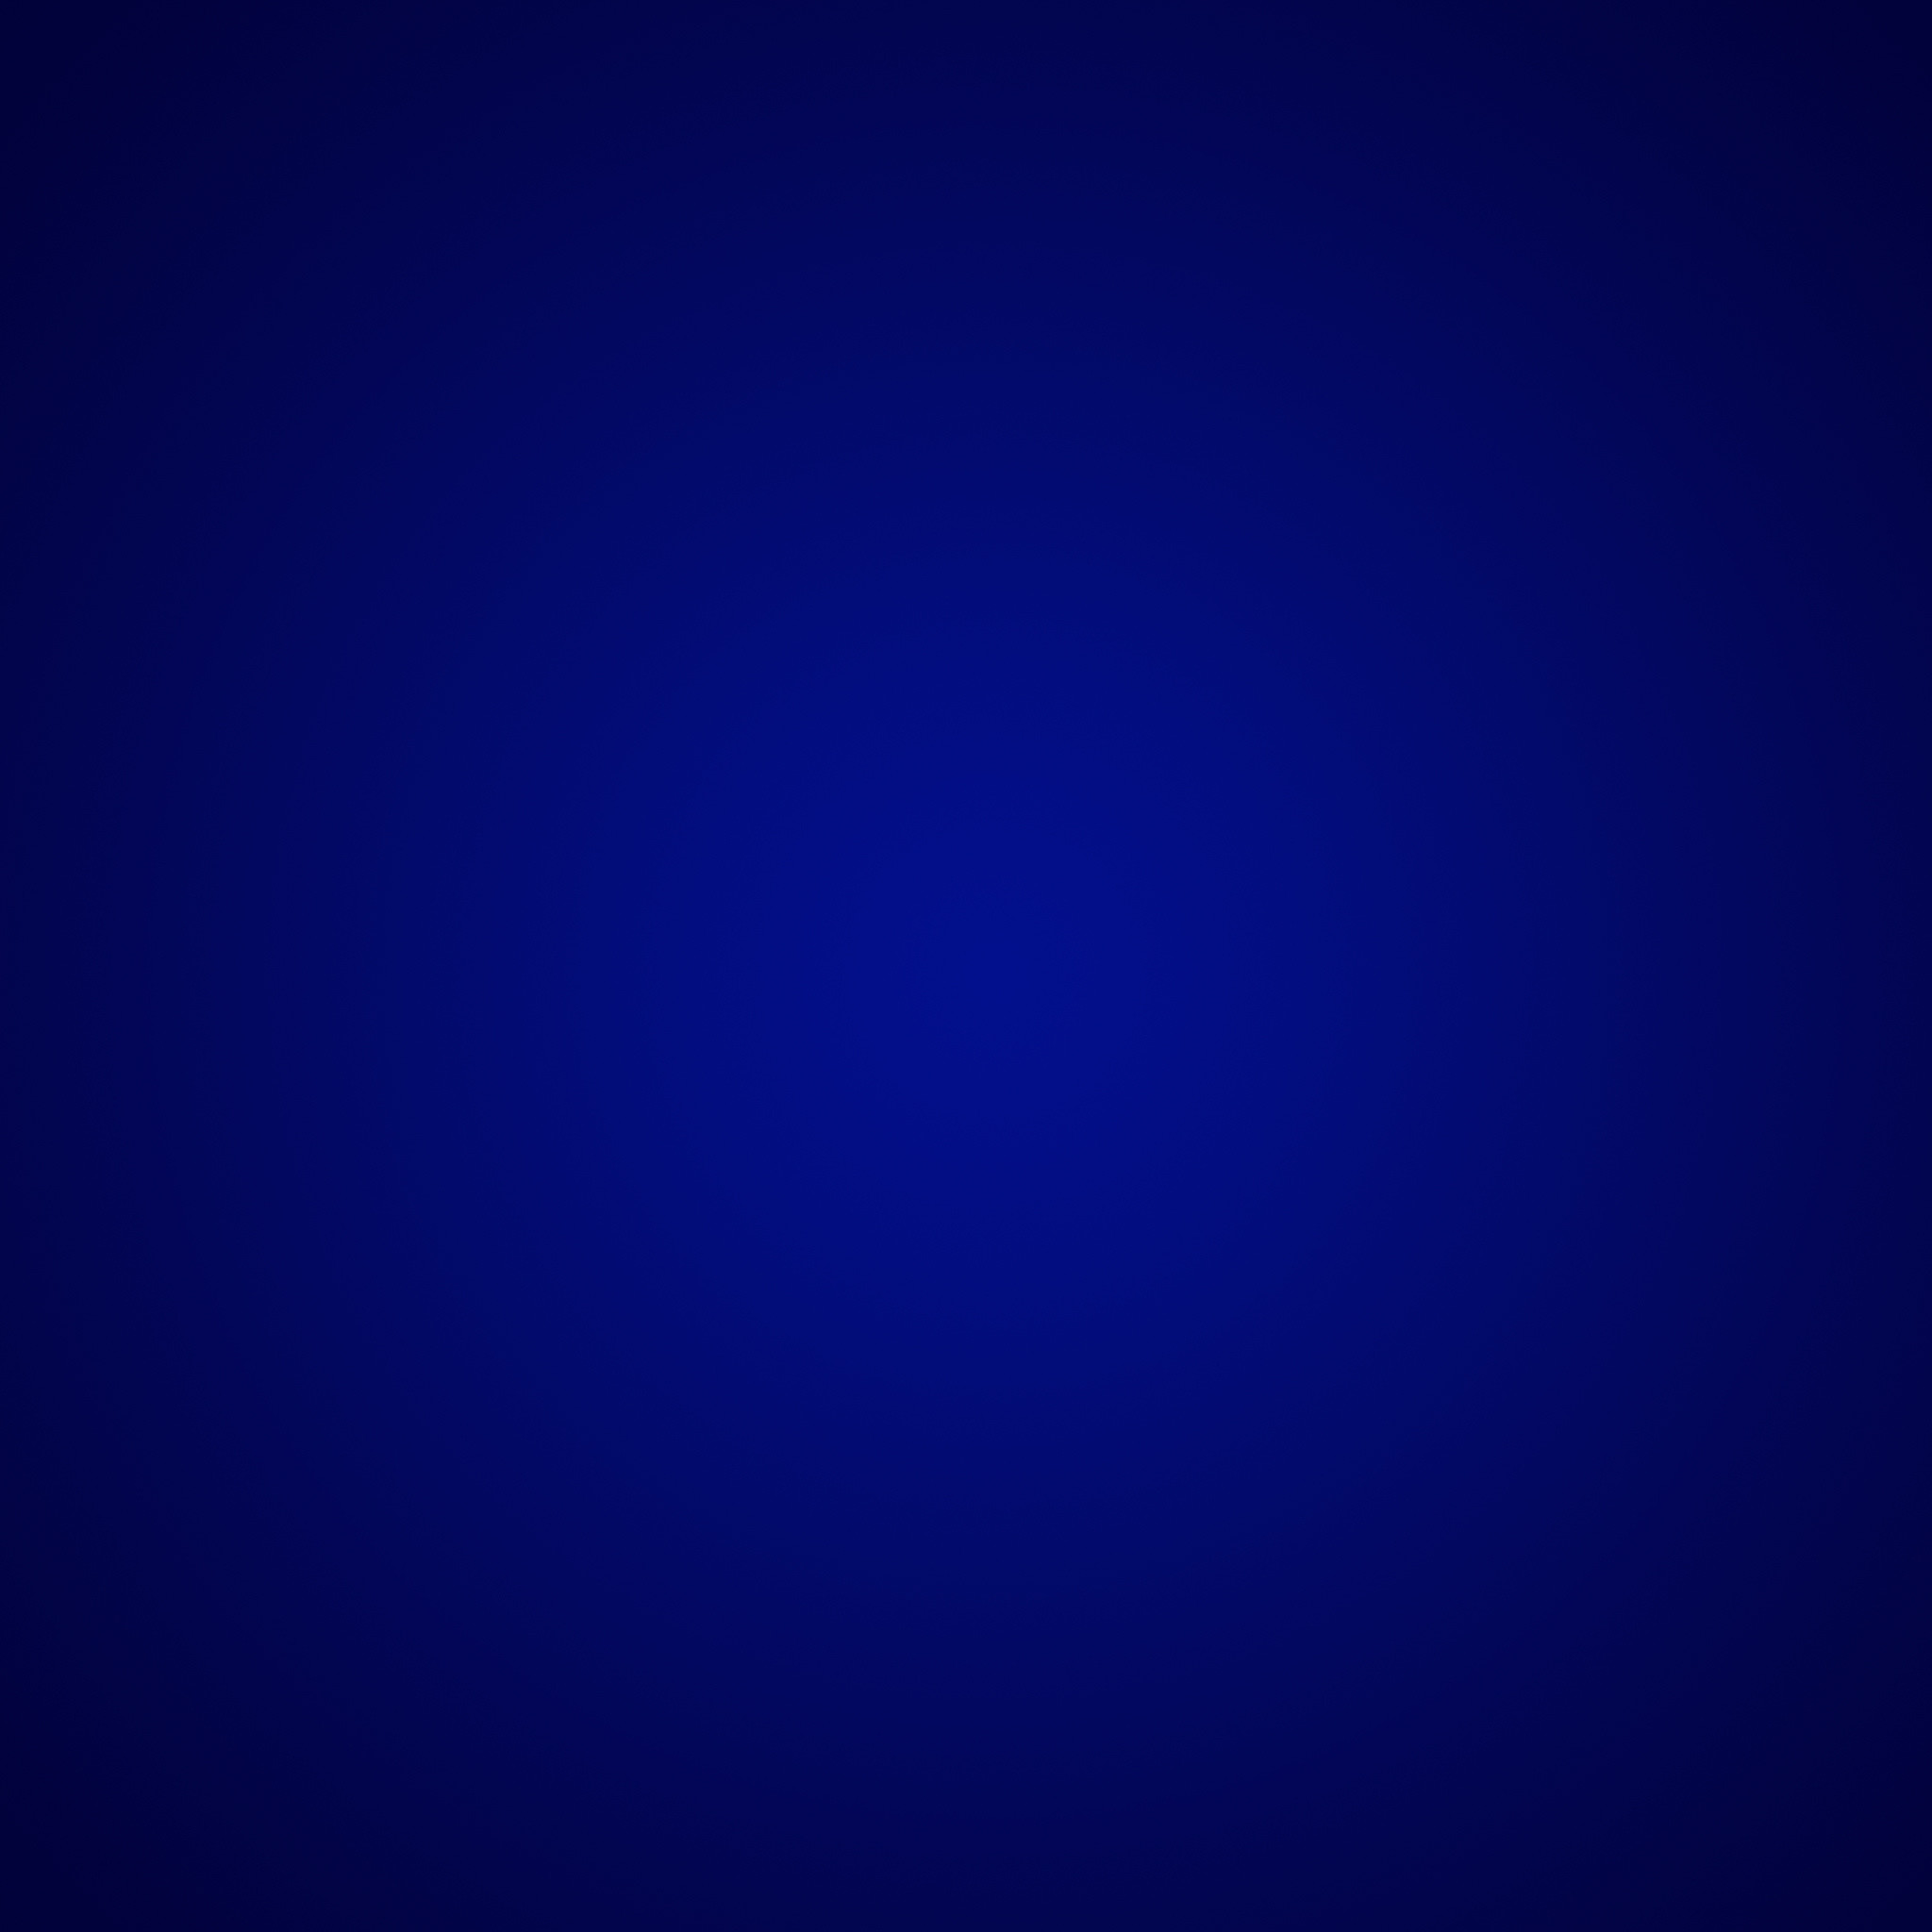 2048x2048 Dark Blue Wallpapers HD